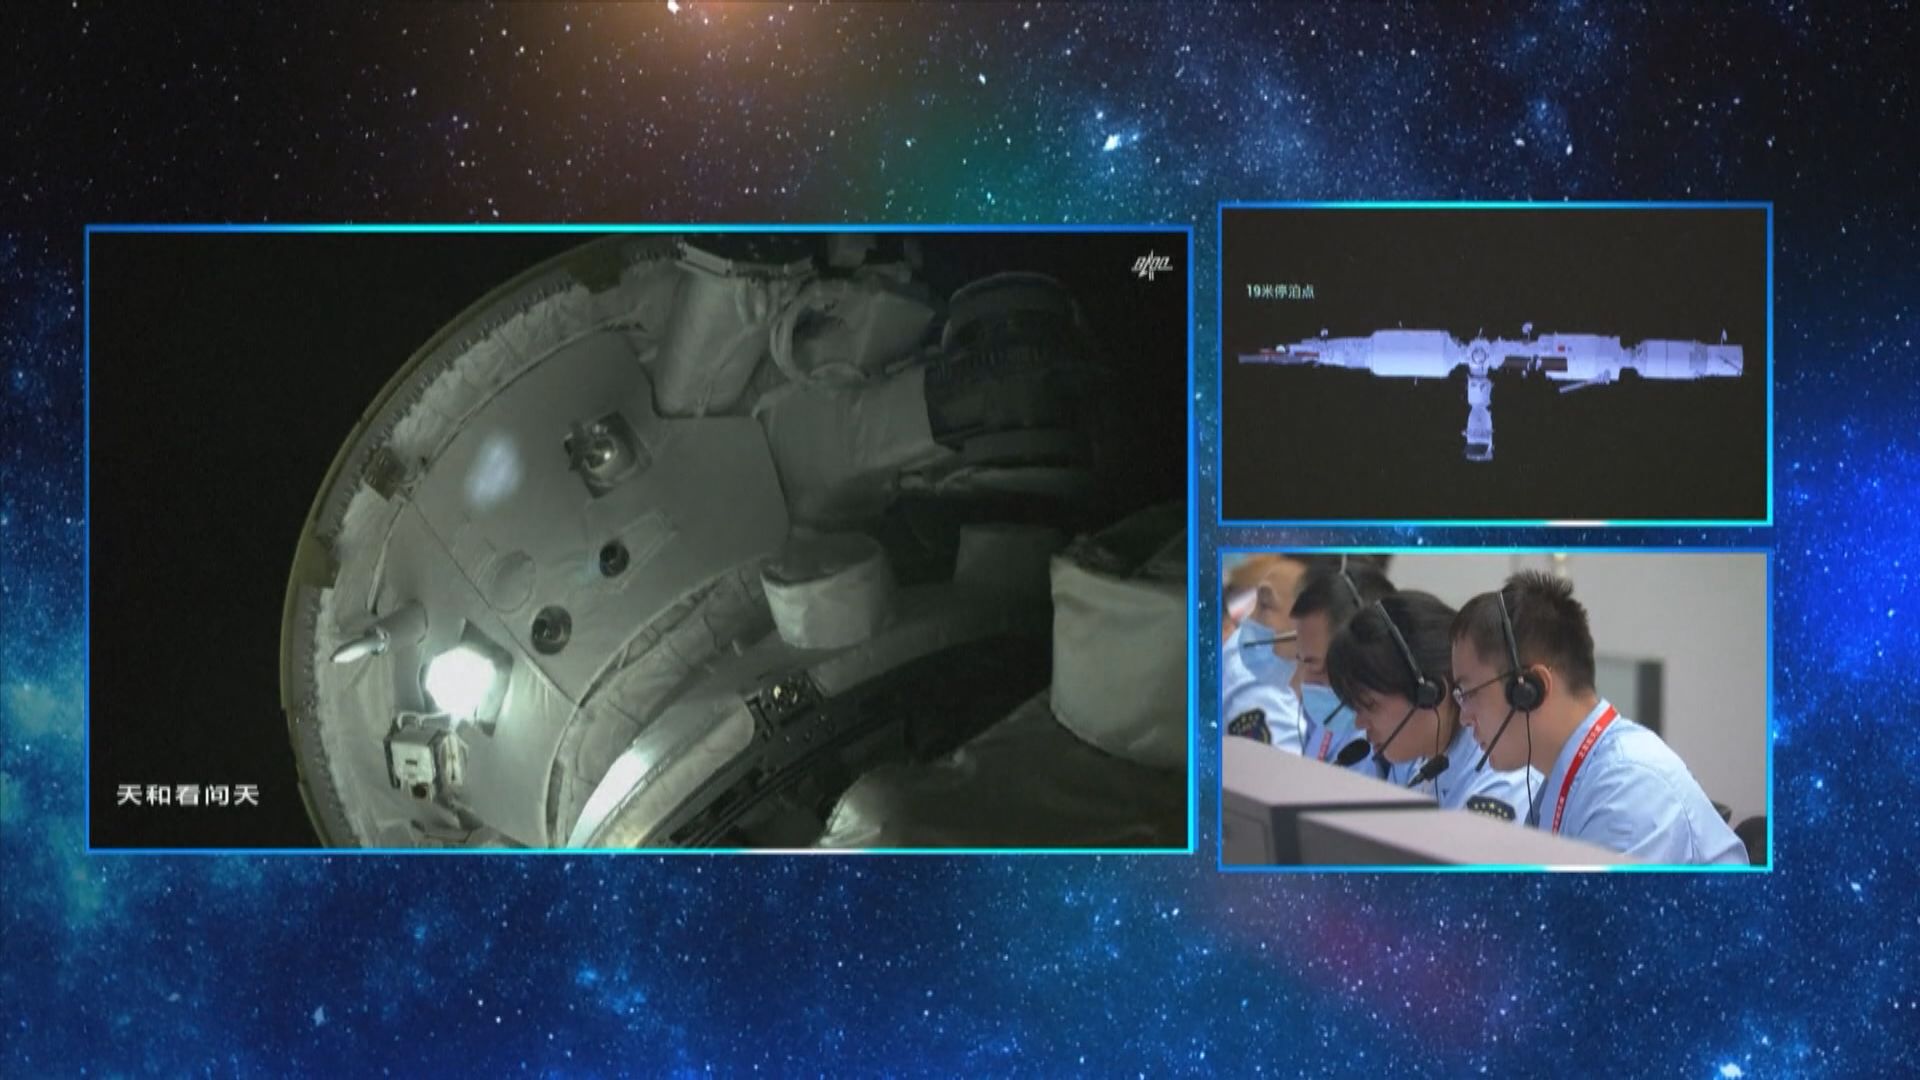 天和核心艙內三名太空人順利進入問天實驗艙